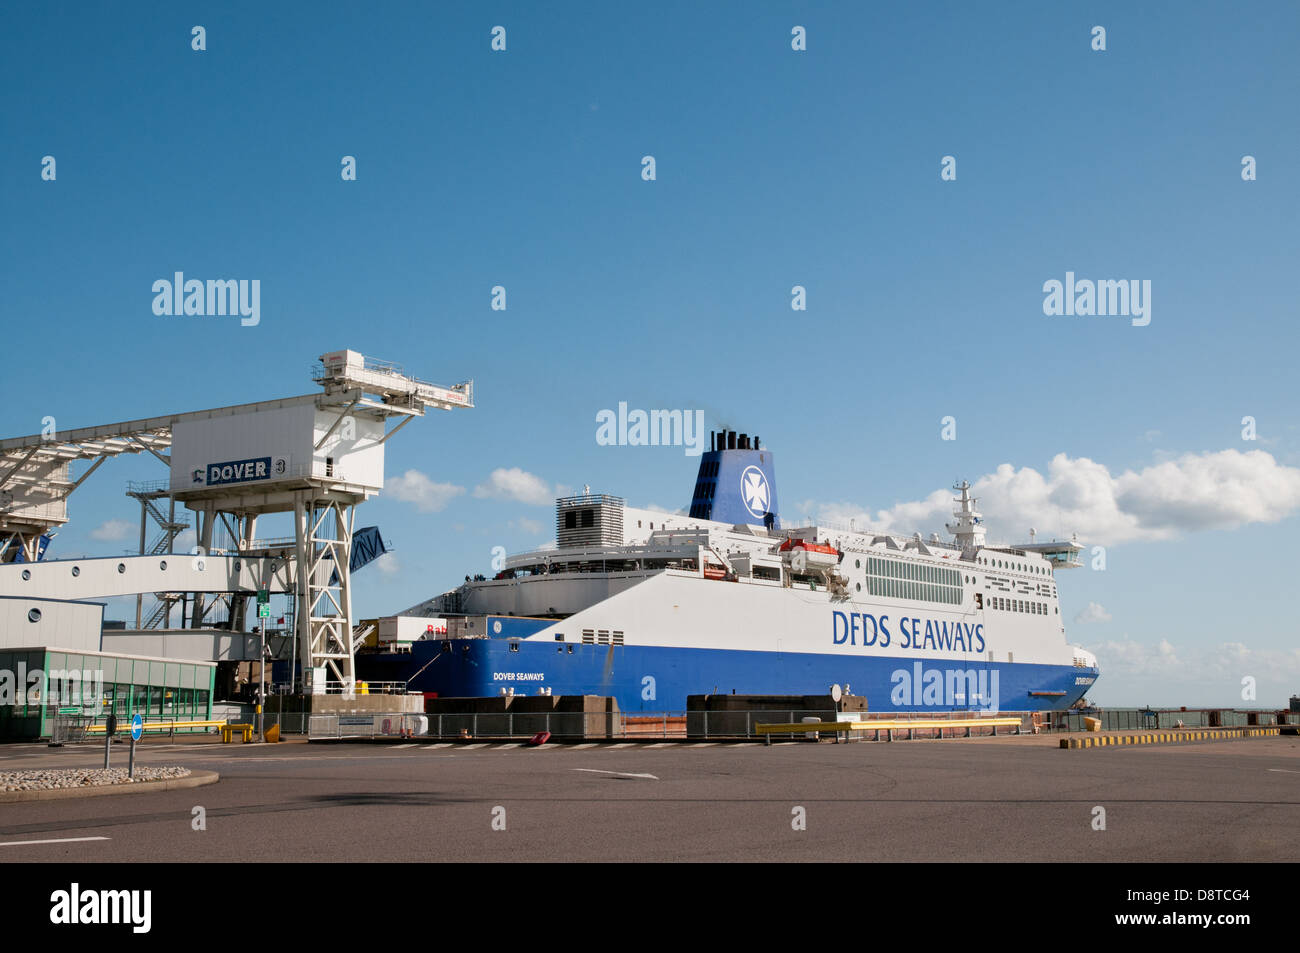 DFDS Seaways ferry channel sur le point de partir de l'Est de Docks Dover Angleterre pour traverser la Manche Banque D'Images